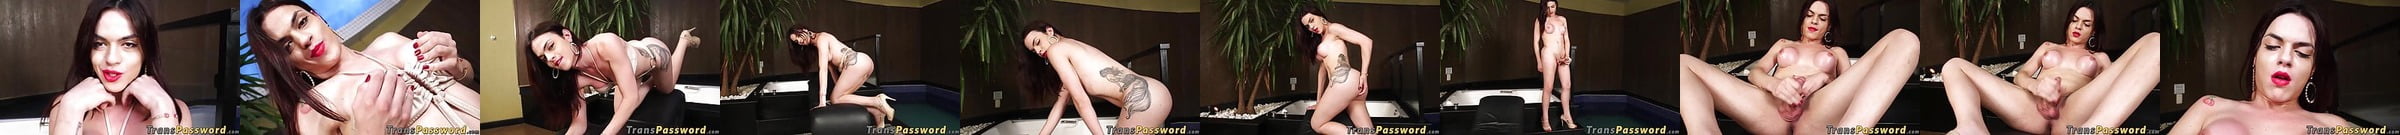 Los Vídeos Con Contenido Destacado De Porno Trans 500